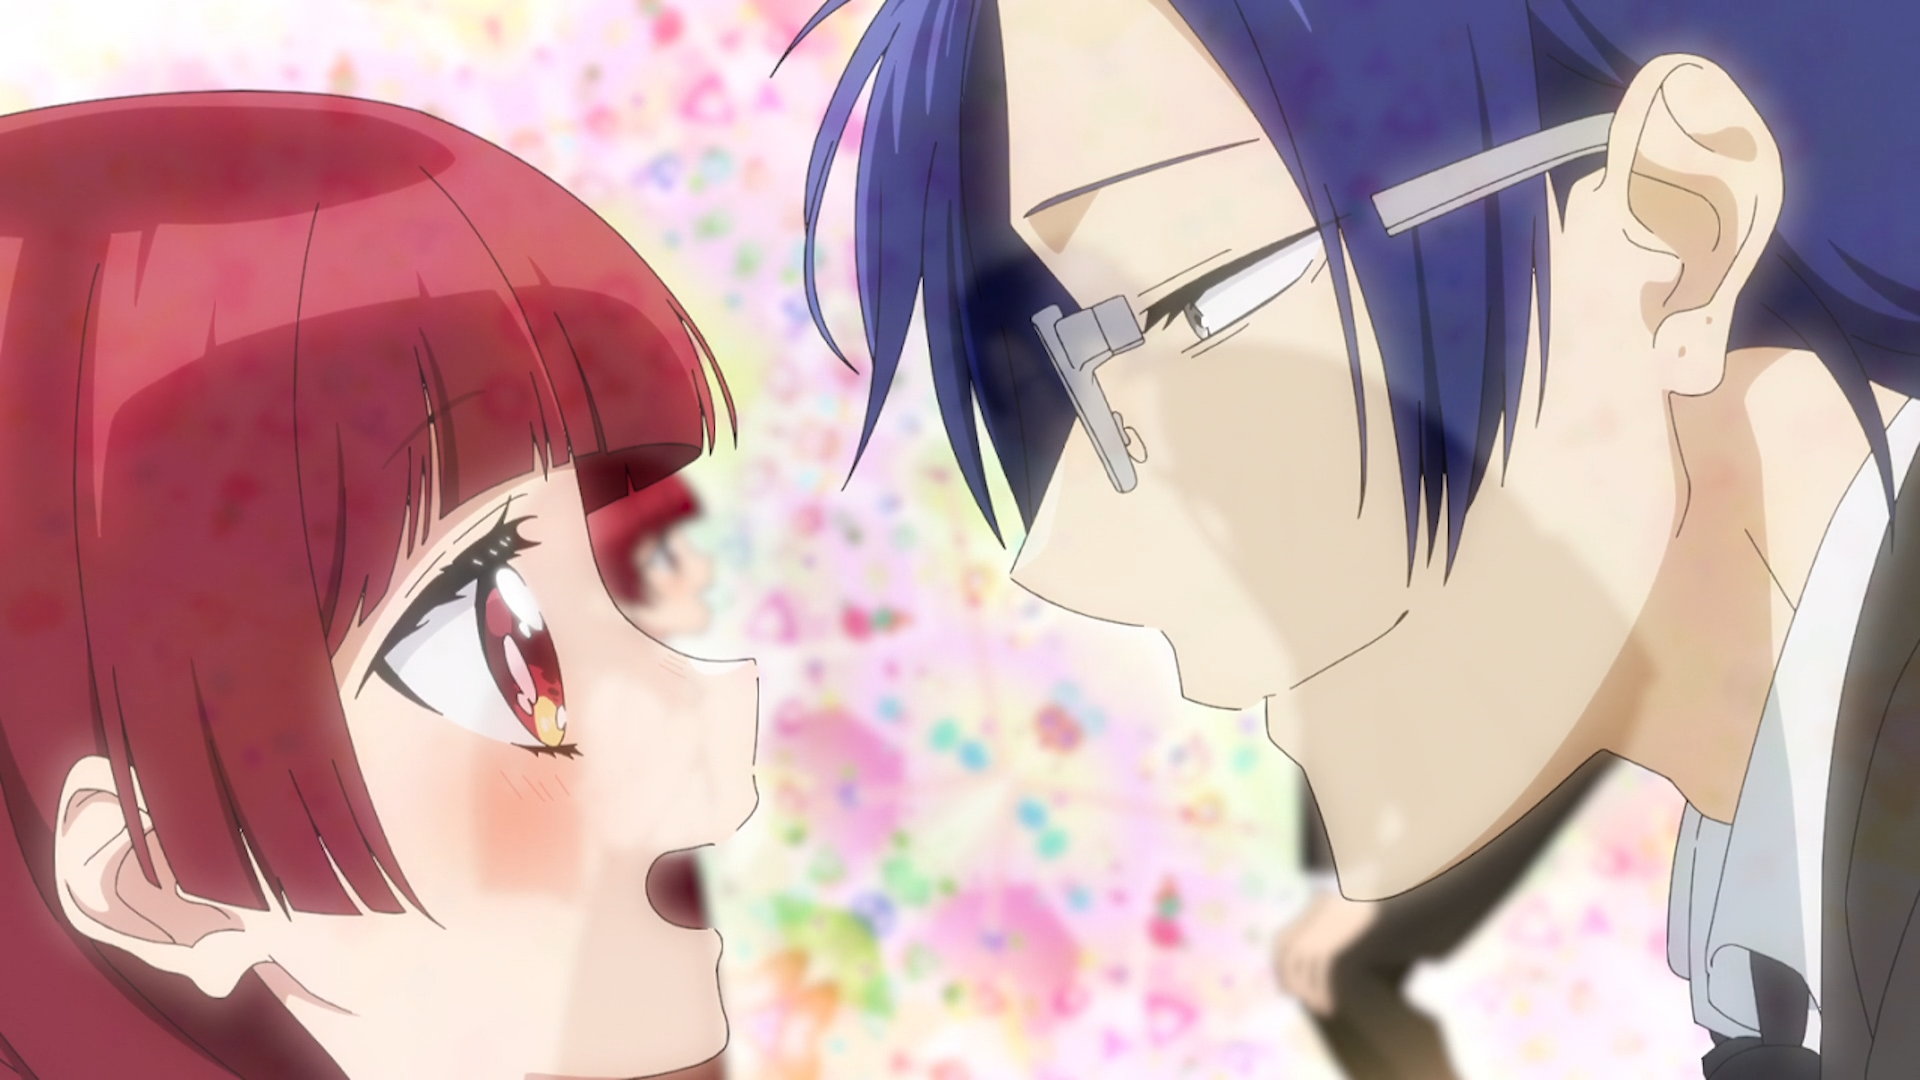 Yaeka and Kirishima icons  Anime poses reference, Kirishima, Anime shows